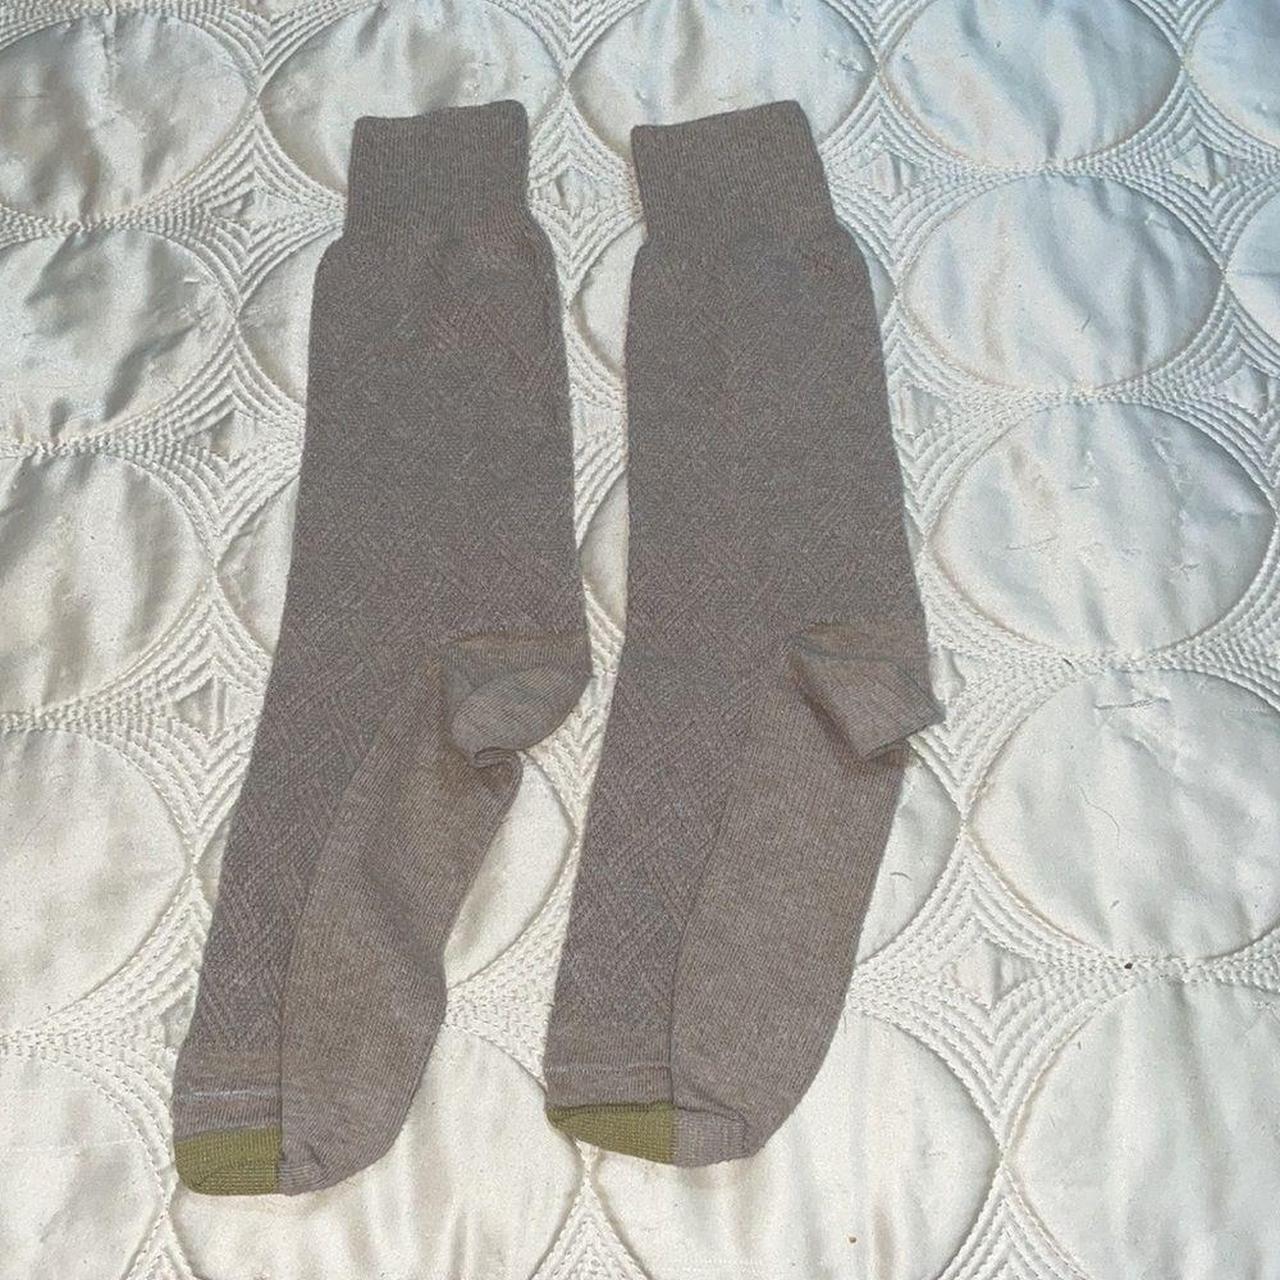 Gold Toe Men's Brown and Tan Socks (4)